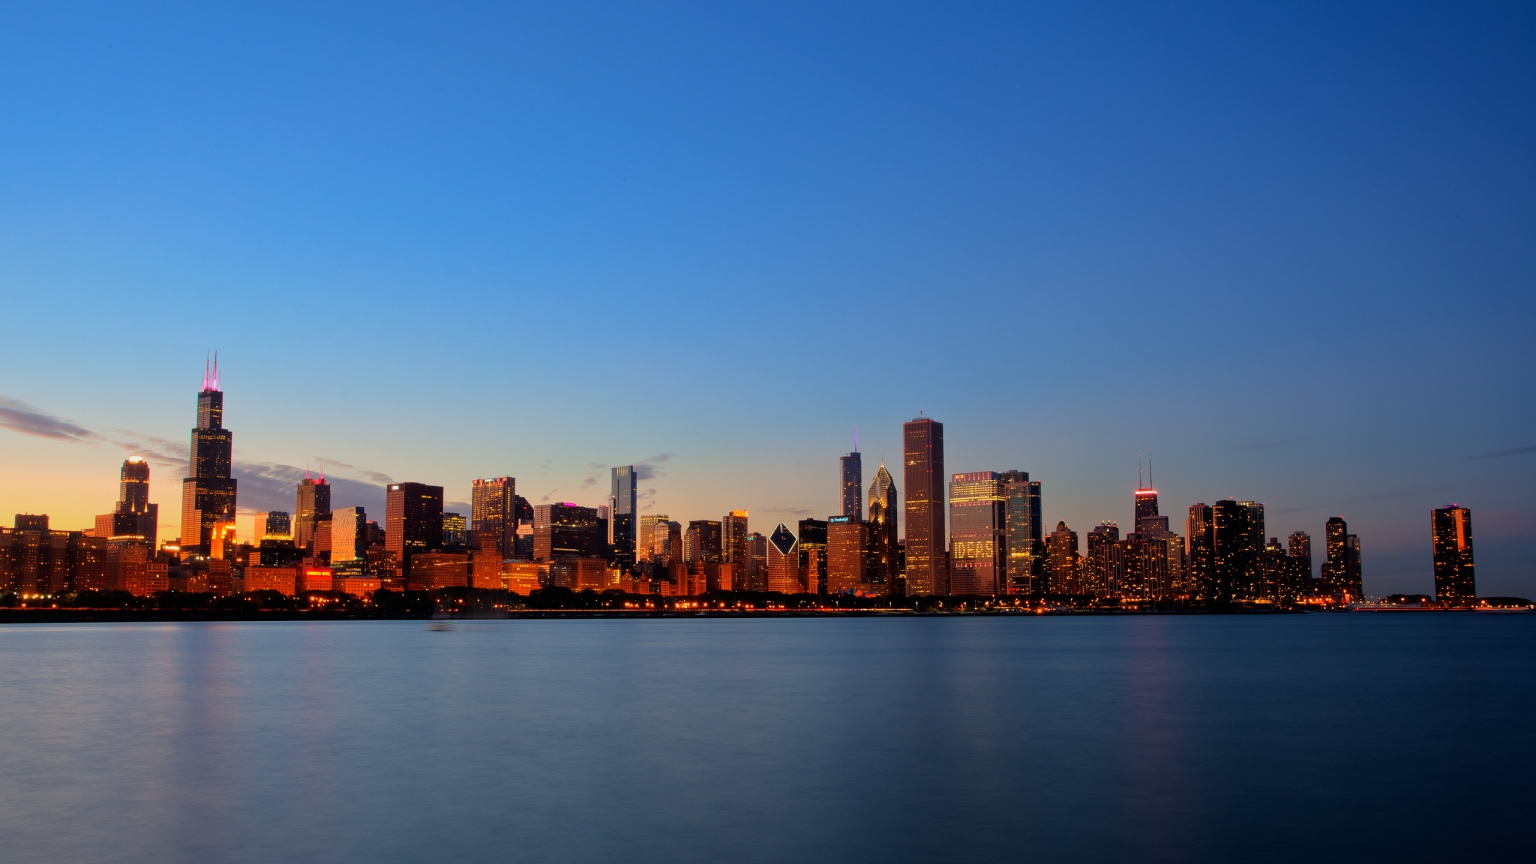 Chicago Skyline for 1536 x 864 HDTV resolution